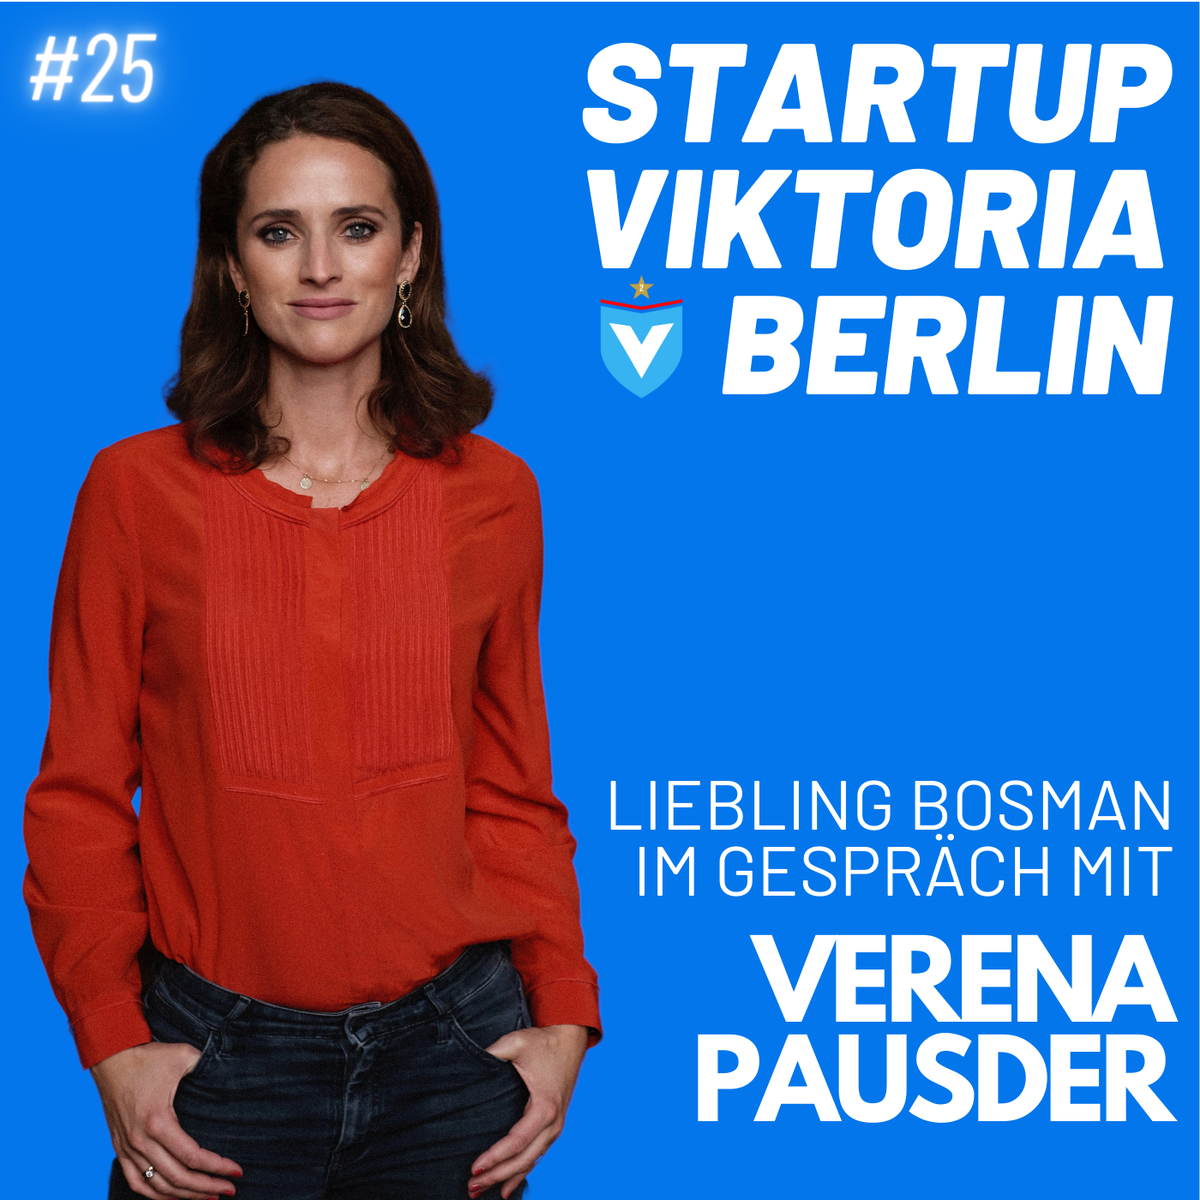 Startup VIKTORIA BERLIN: Ein Gespräch mit Verena Pausder